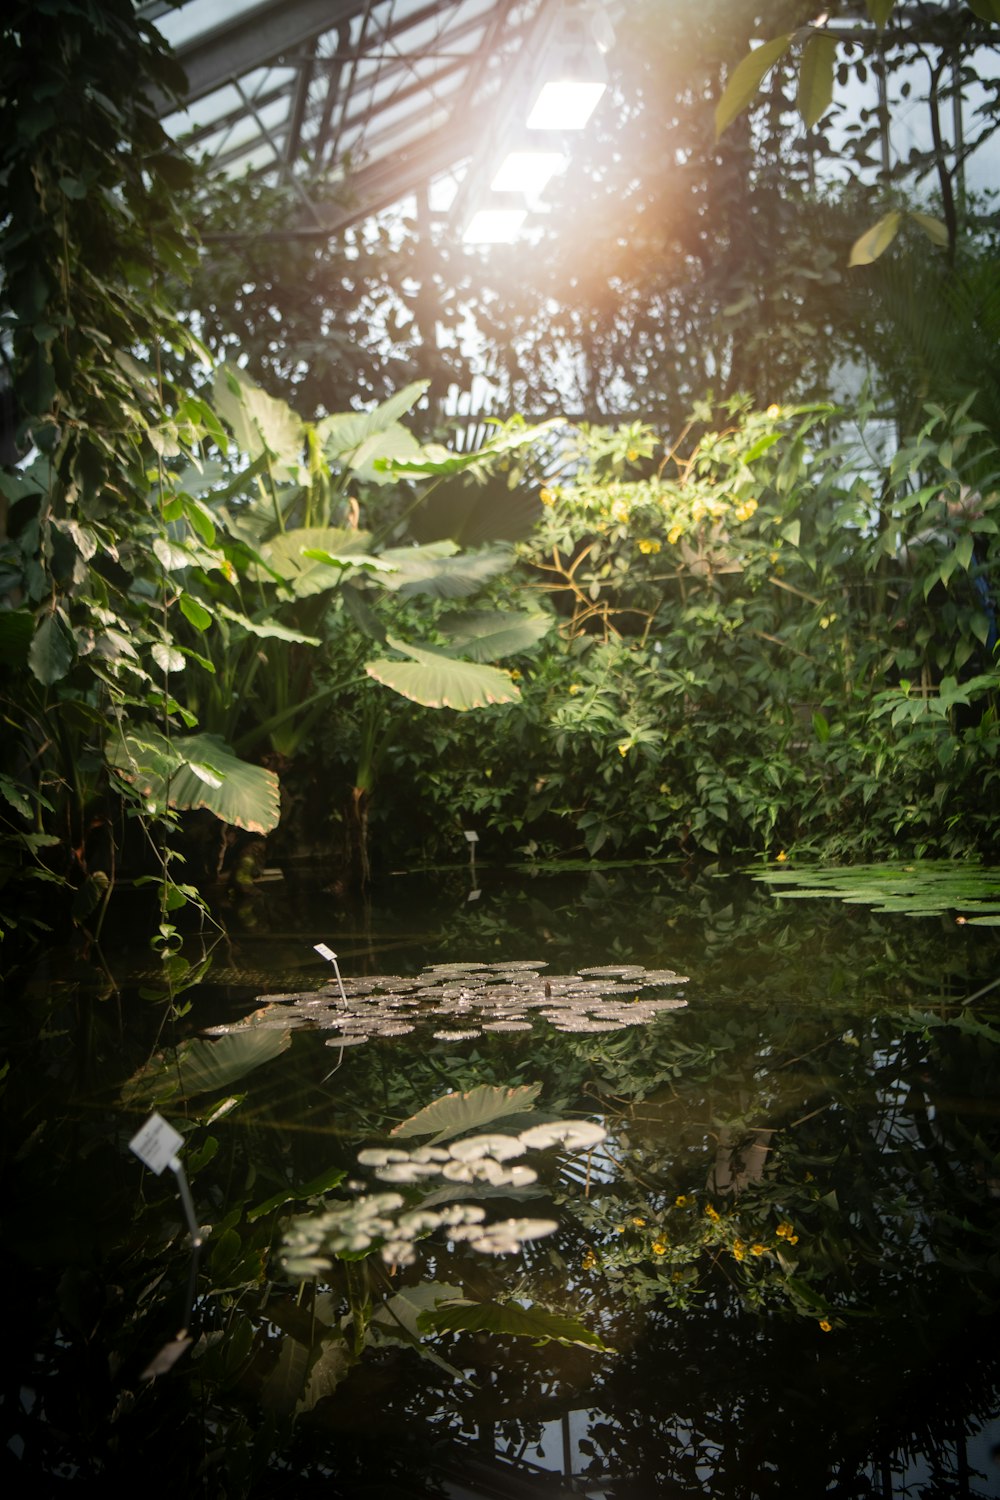 Un estanque en medio de un bosque lleno de muchas plantas